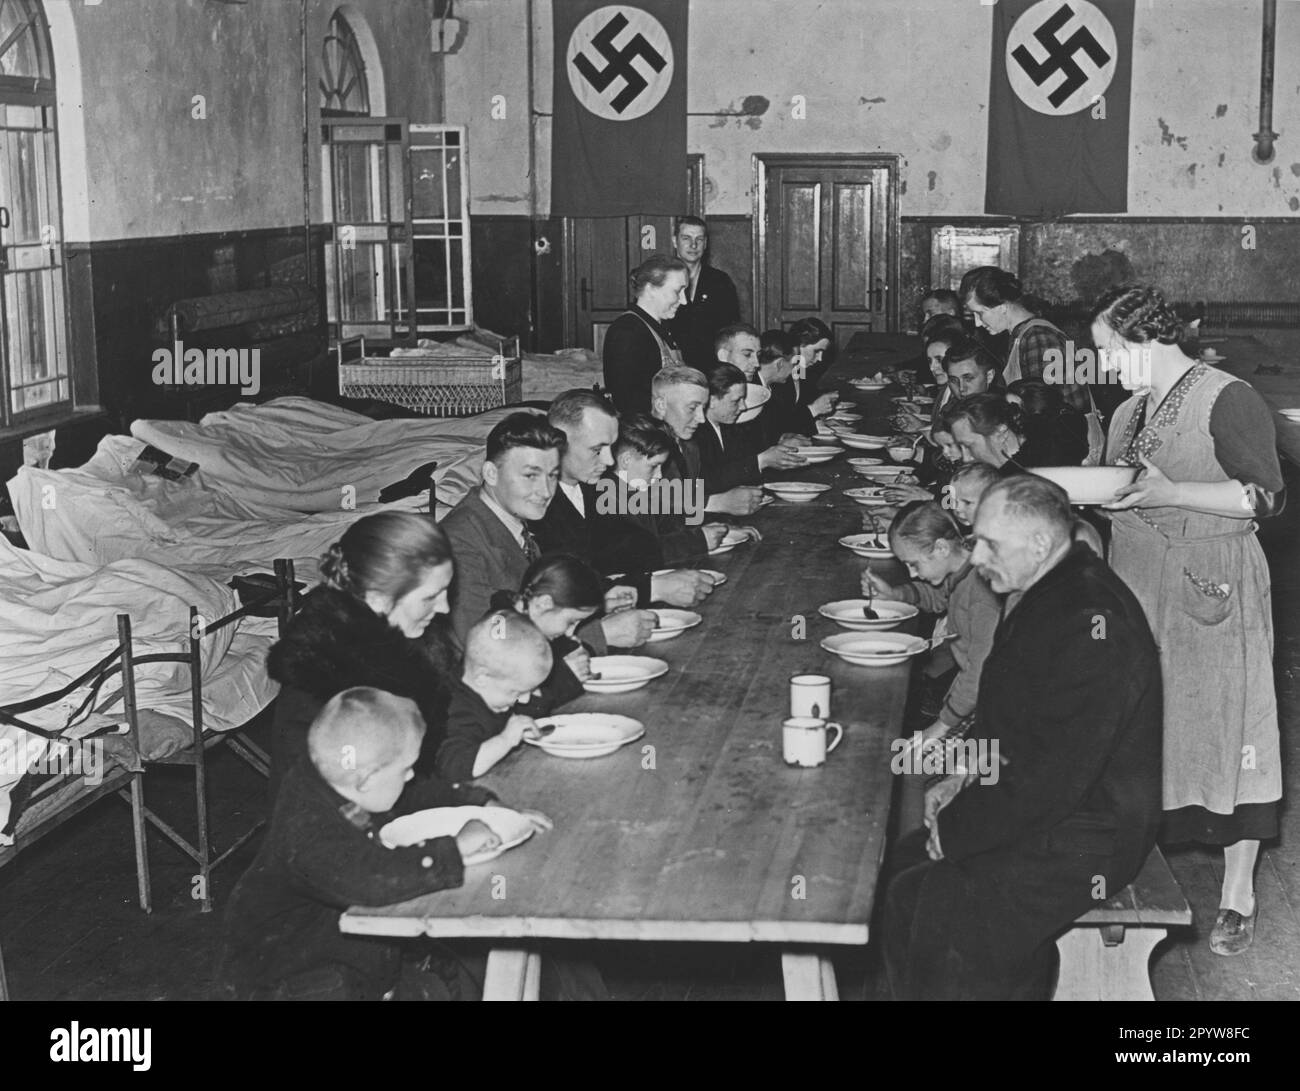 Die sogenannten ethnischen deutschen Flüchtlinge aus Pomerelien werden von NSV-Mitgliedern in Notunterkünften, einem Gymnasium, an der deutschen Grenzstation Praust betreut, bevor sie nach Danzig geschickt werden. Foto: Schwahn. [Maschinelle Übersetzung] Stockfoto